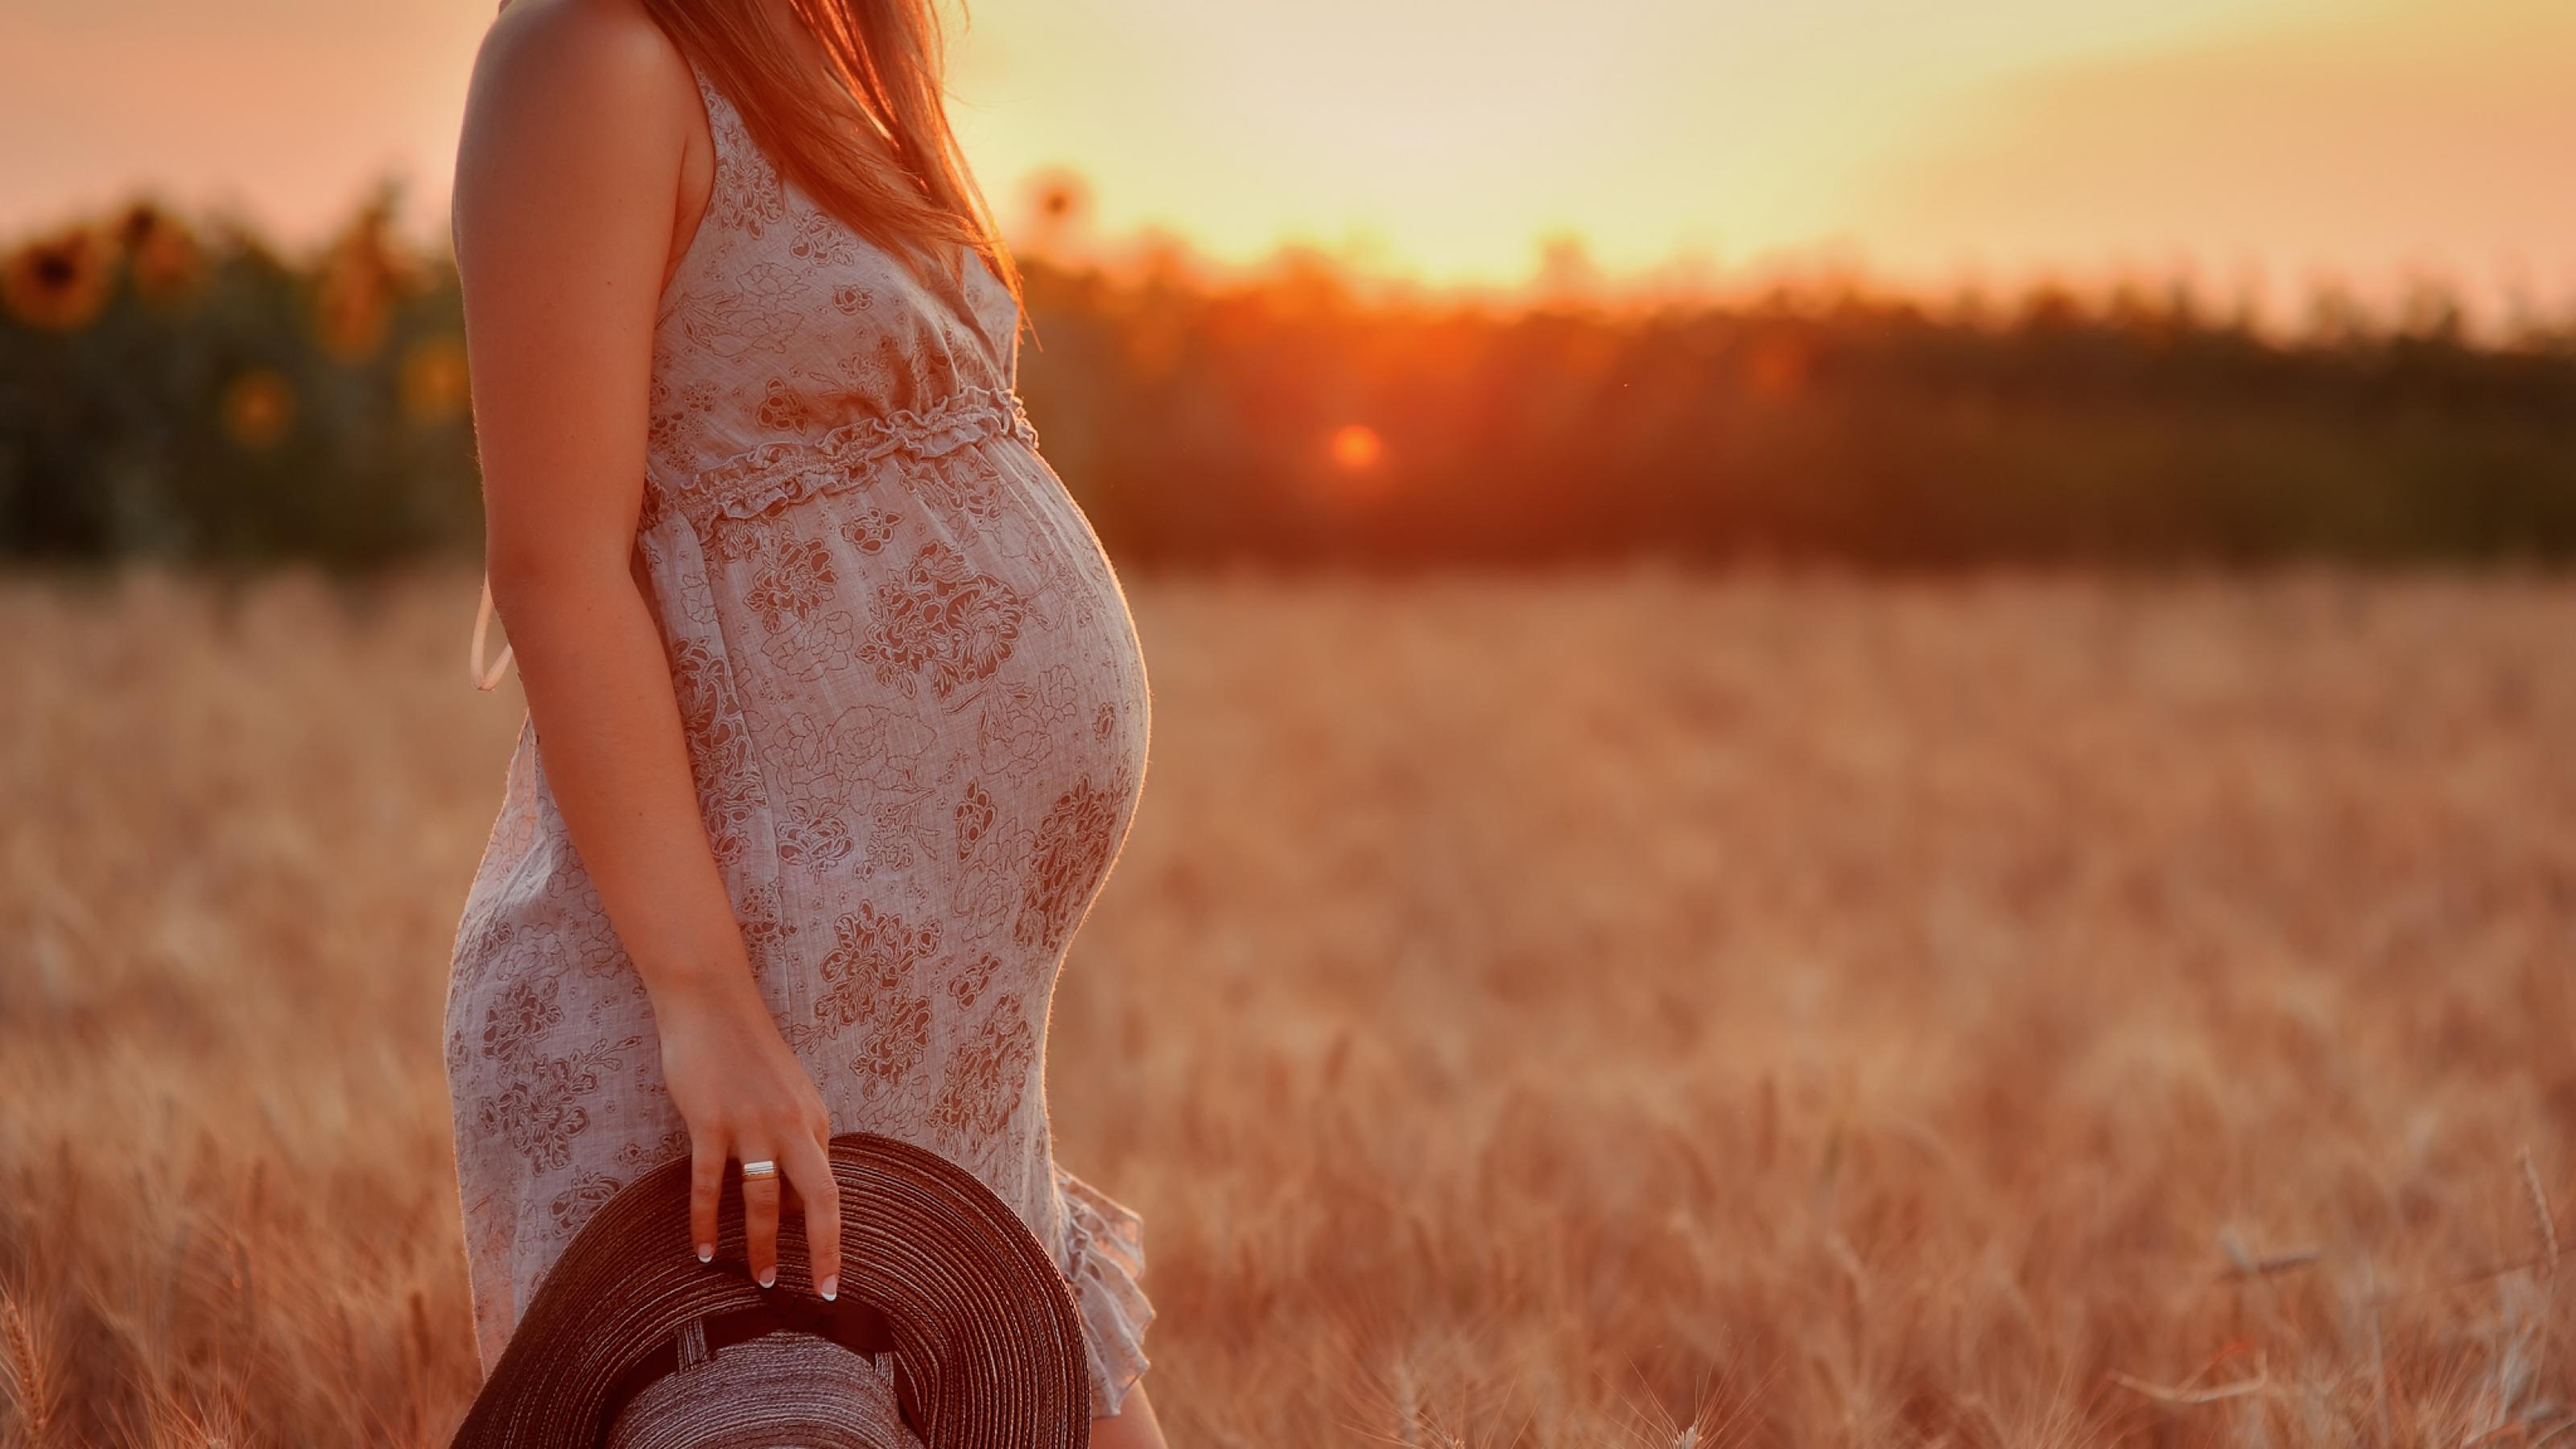 Vor einem Weizenfeld bei Sonnenuntergang ist eine hochschwangere Frau zu sehen. Sie trägt ein leichtes Sommerkleid und hält in der Hand des herabhängenden Arms einen Sonnenhut.